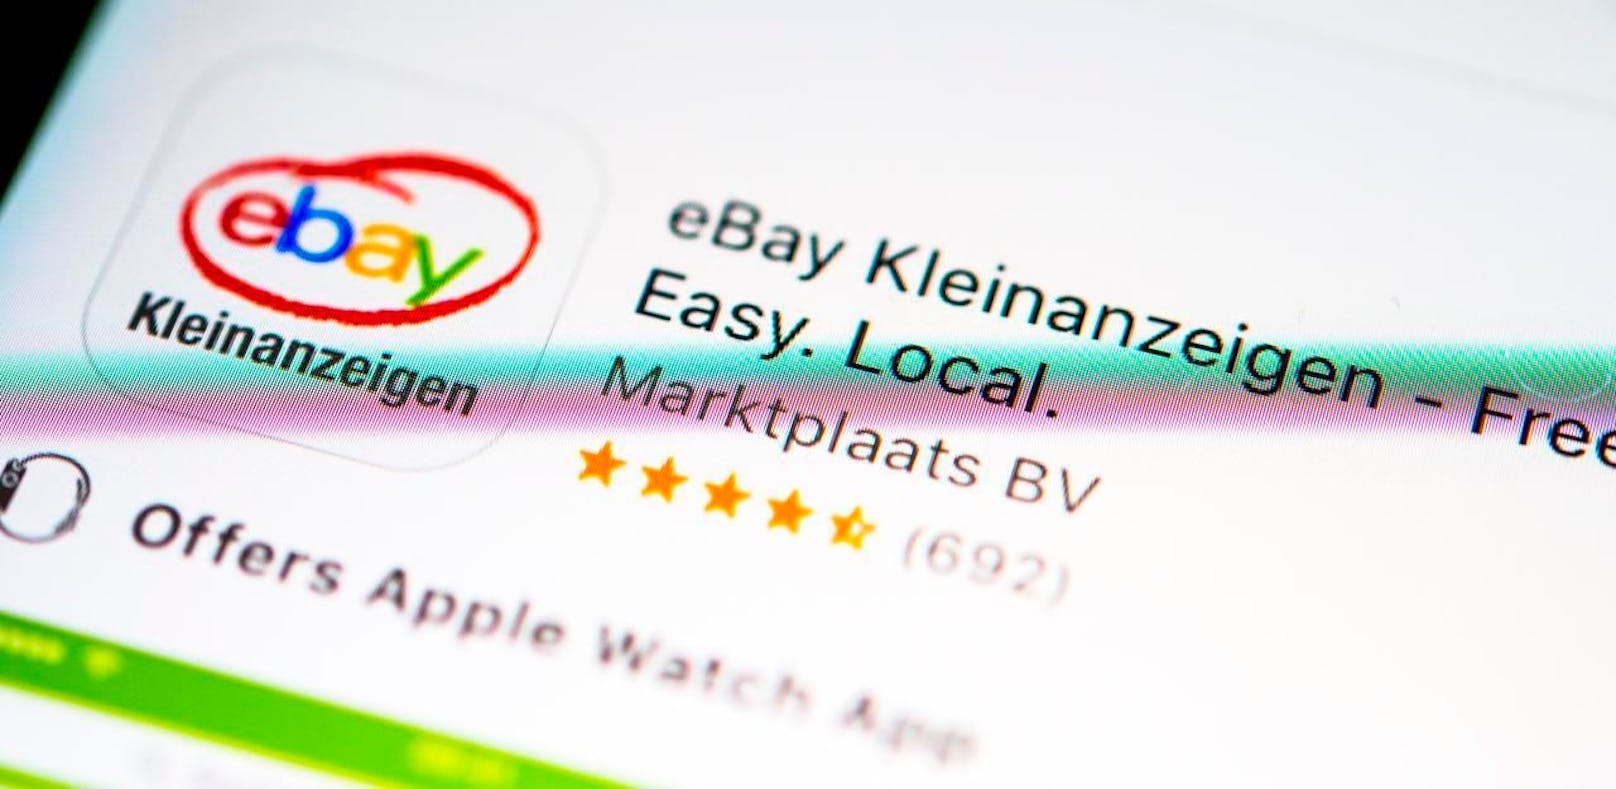 Ebay hat dafür Filter, die automatisch Angebote blockieren, die unsicher sind oder nicht den Richtlinien entsprechen. Bei Wish müssen alle Händler beim Verkauf ihrer Waren die lokalen Gesetze einhalten.<br>